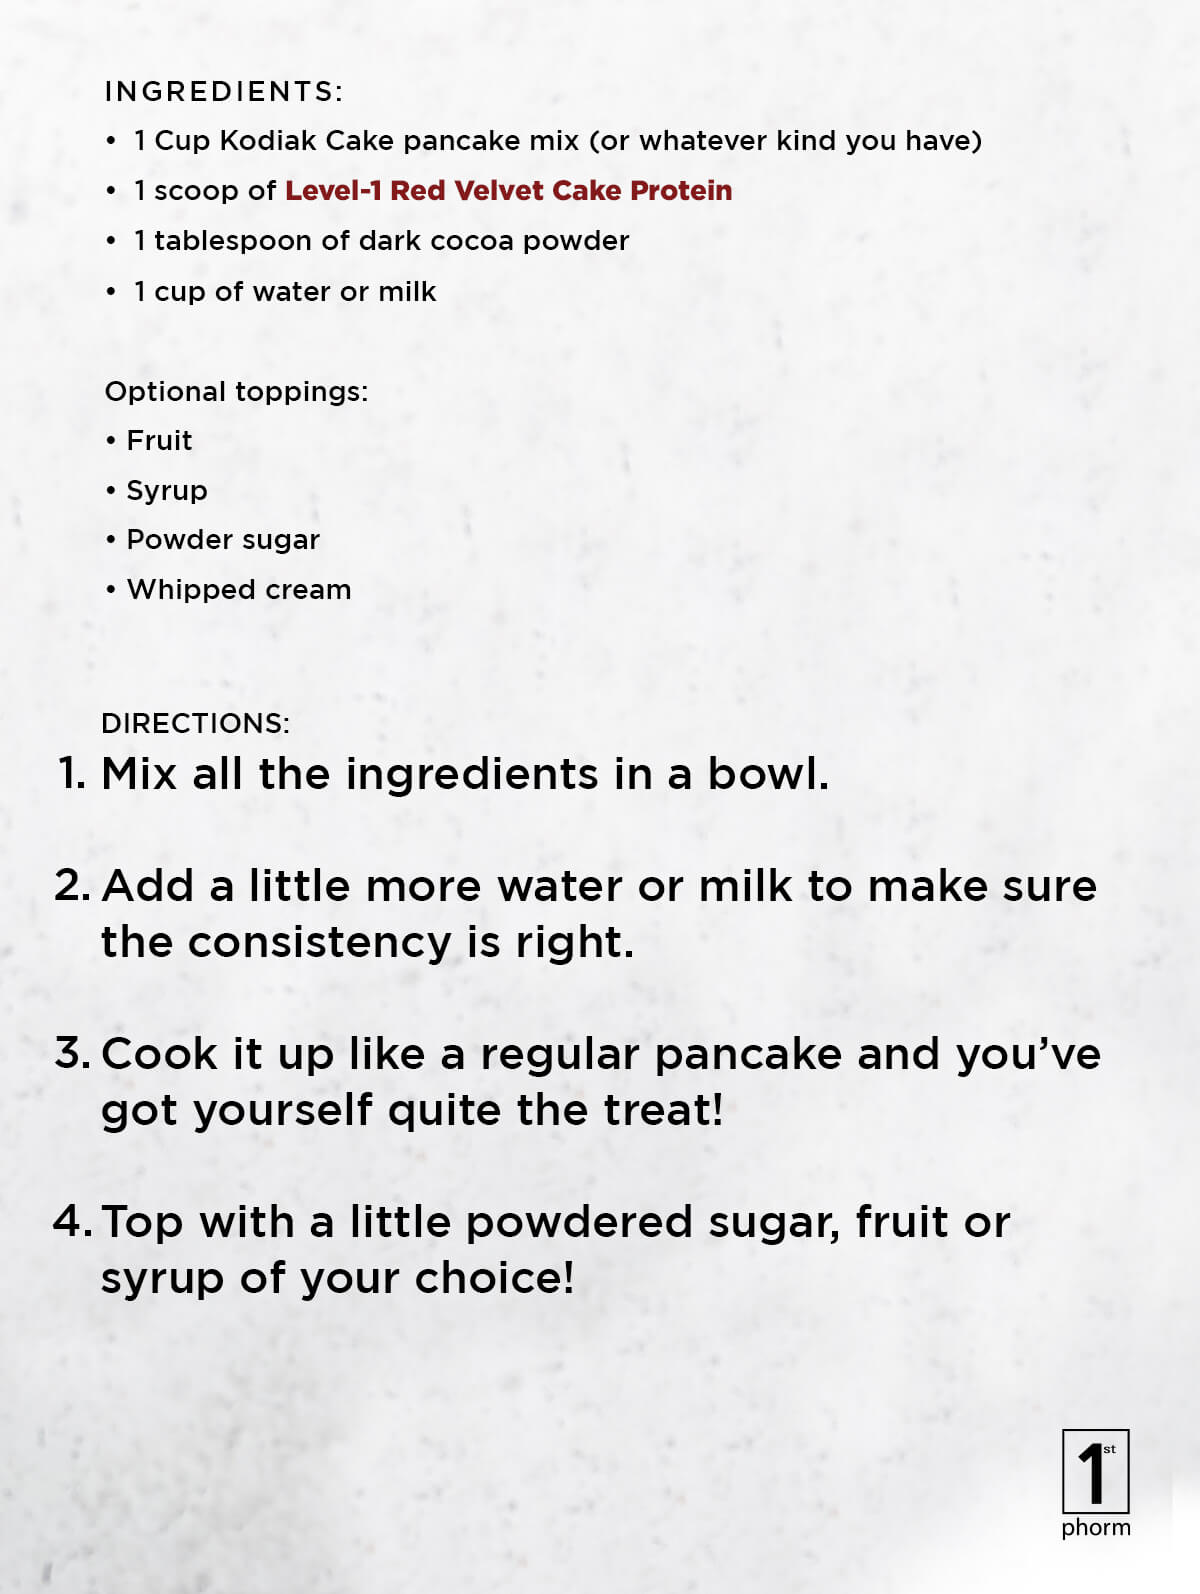 Red Velvet Level-1 Protein Pancakes Recipe